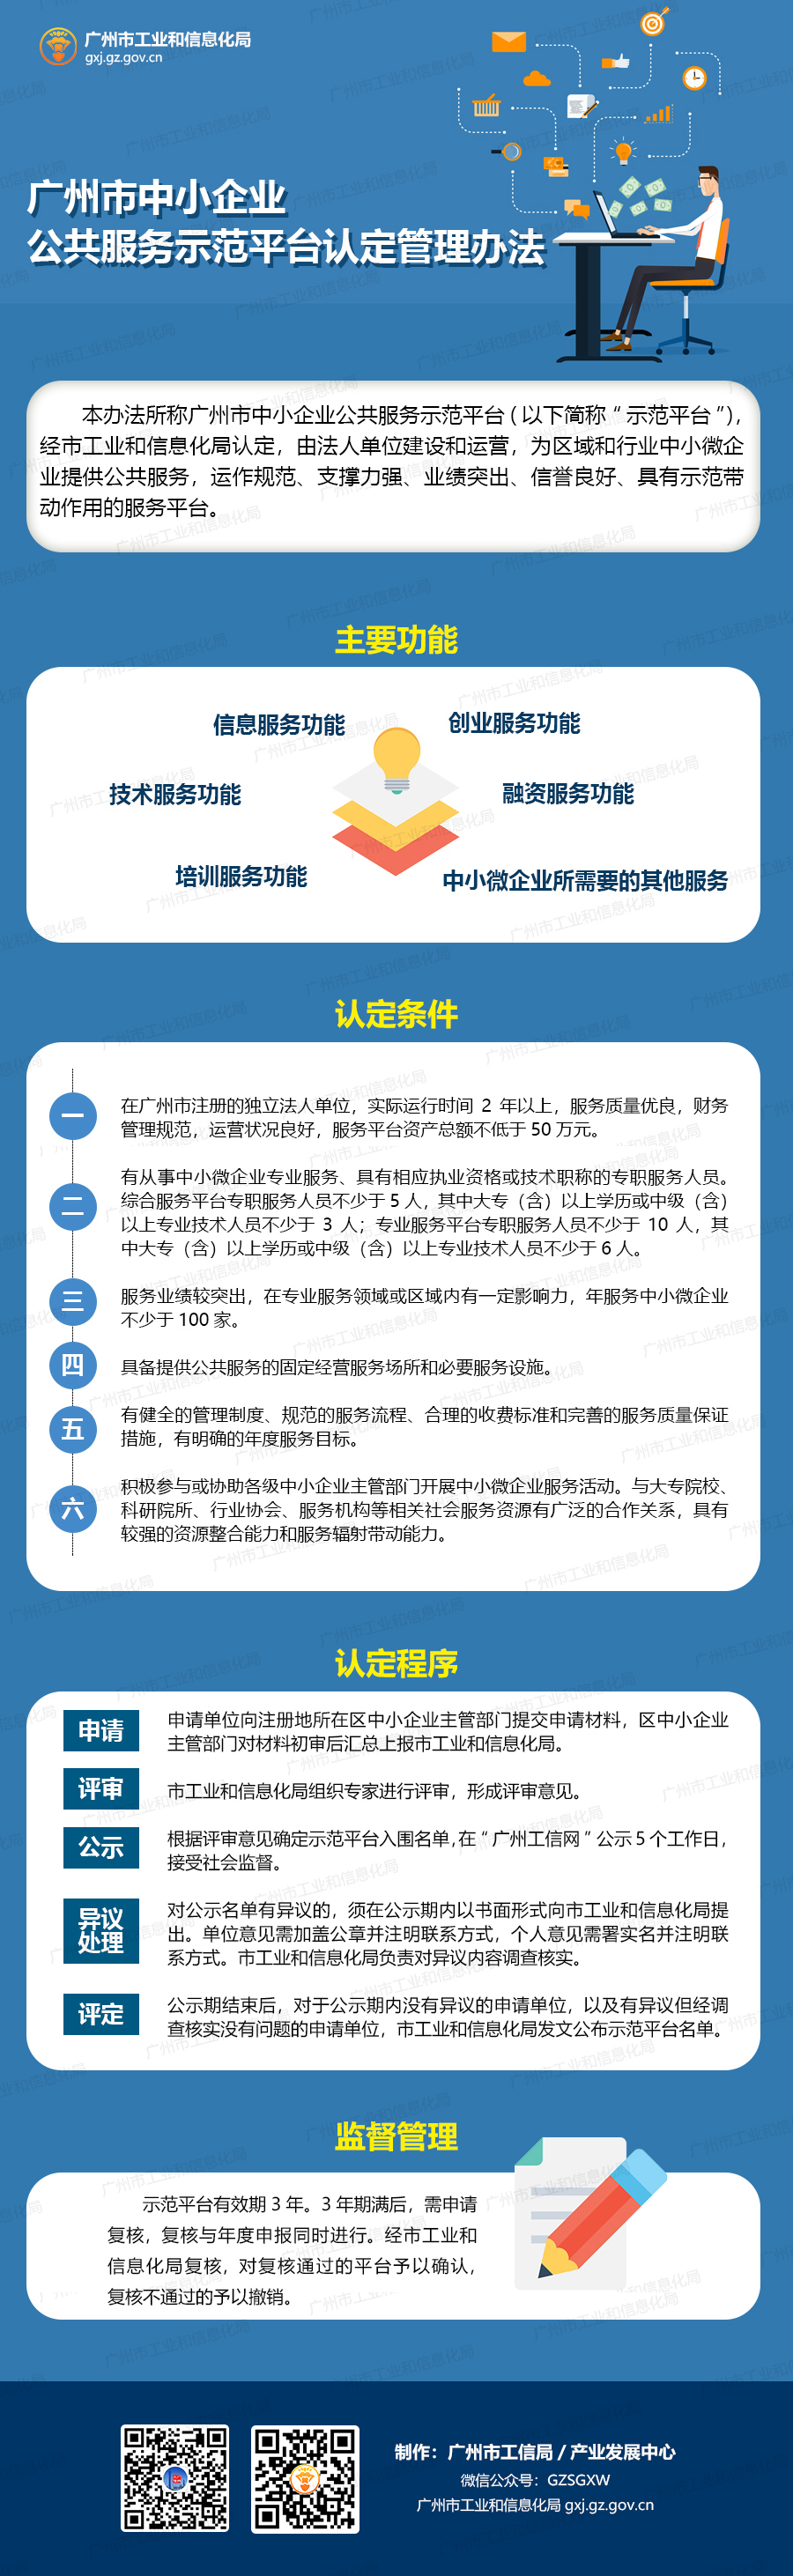 广州市工业和信息化局关于印发广州市中小企业公共服务示范平台认定管理办法的通知.jpg